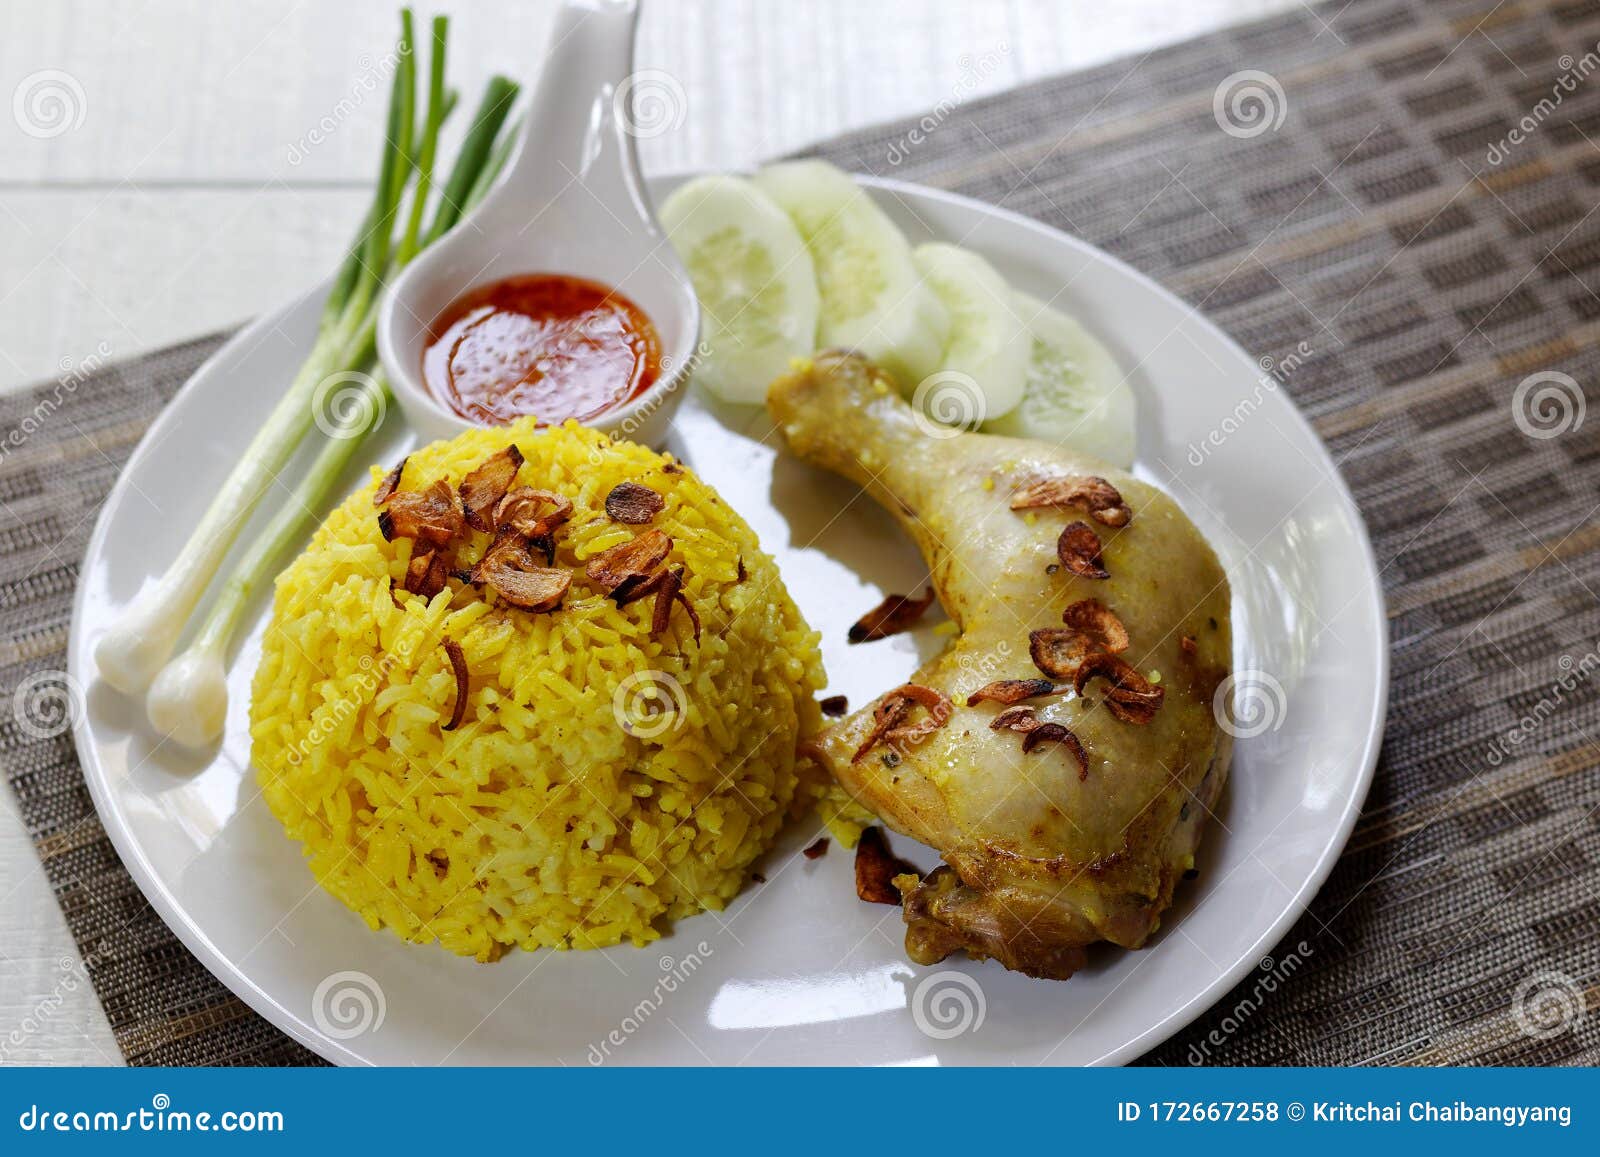 thai chicken biryani with yellow rice khao mok gai